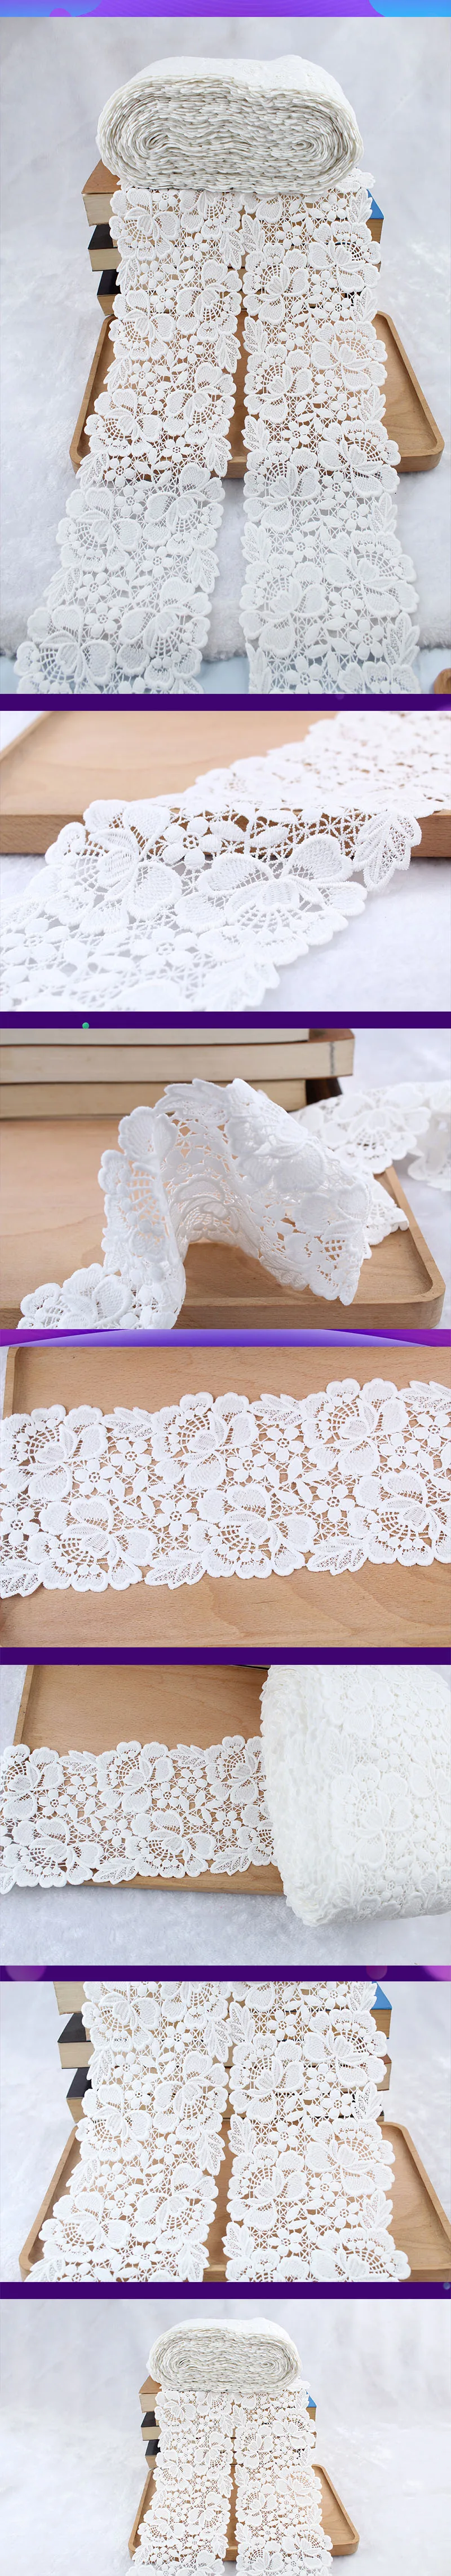 Африканская кружевная ткань высокое качество кружева свадебное украшение отделка DIY 1 ярд водорастворимый молочный шелк вышивка широкие кружева